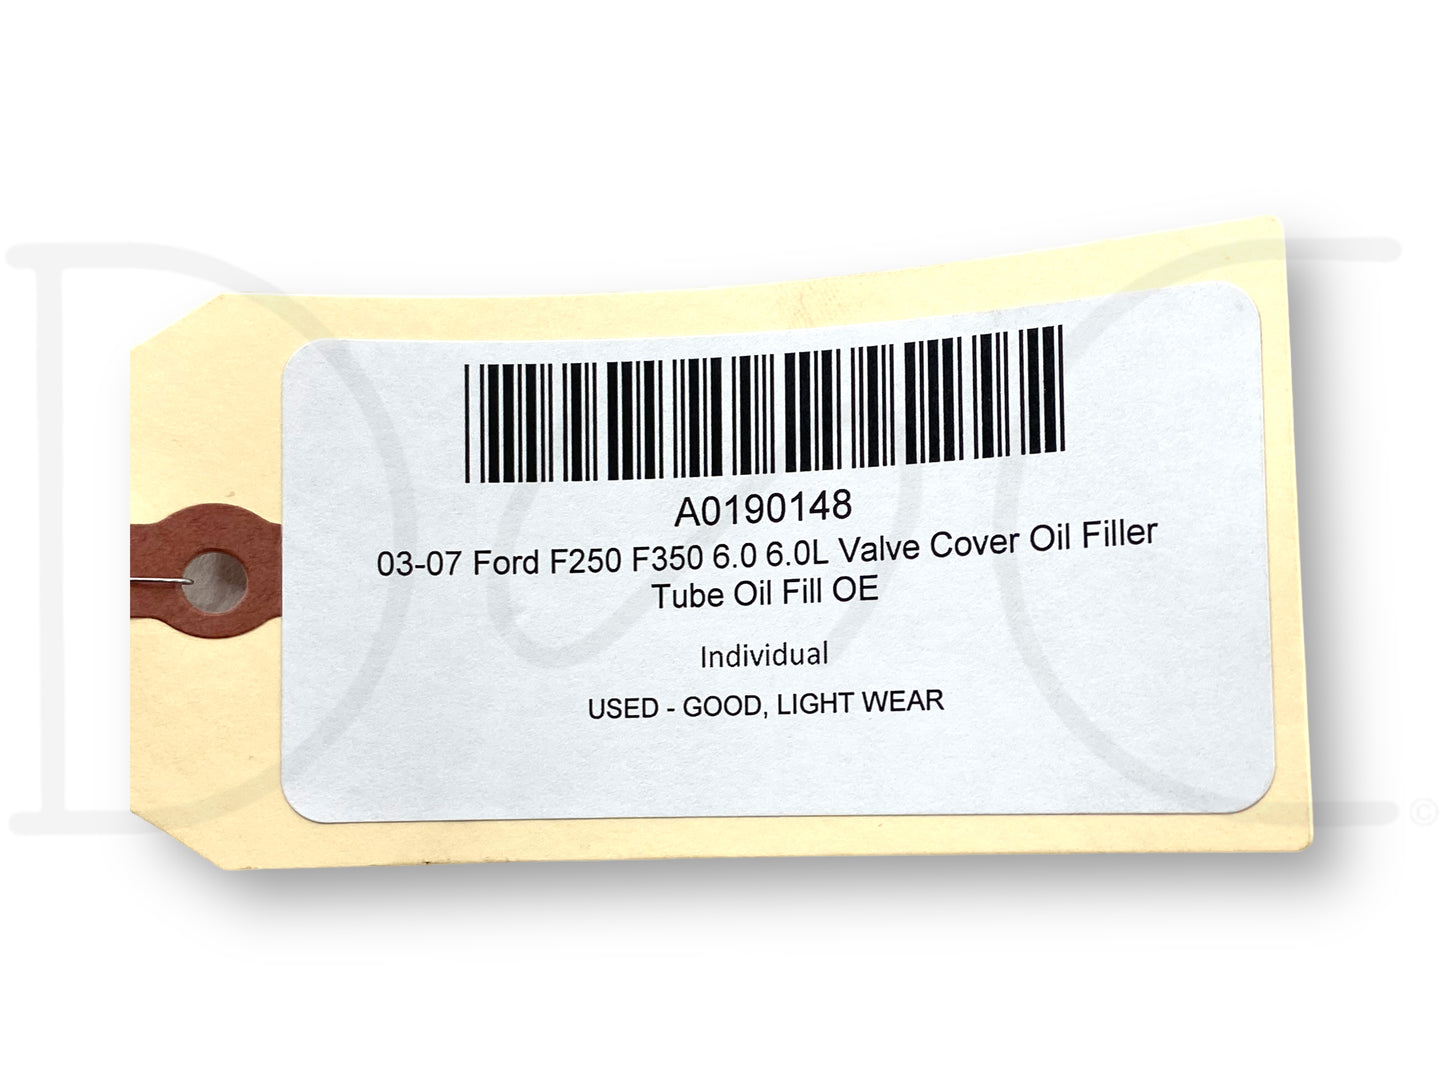 03-07 Ford F250 F350 6.0 6.0L Valve Cover Oil Filler Tube Oil Fill OE